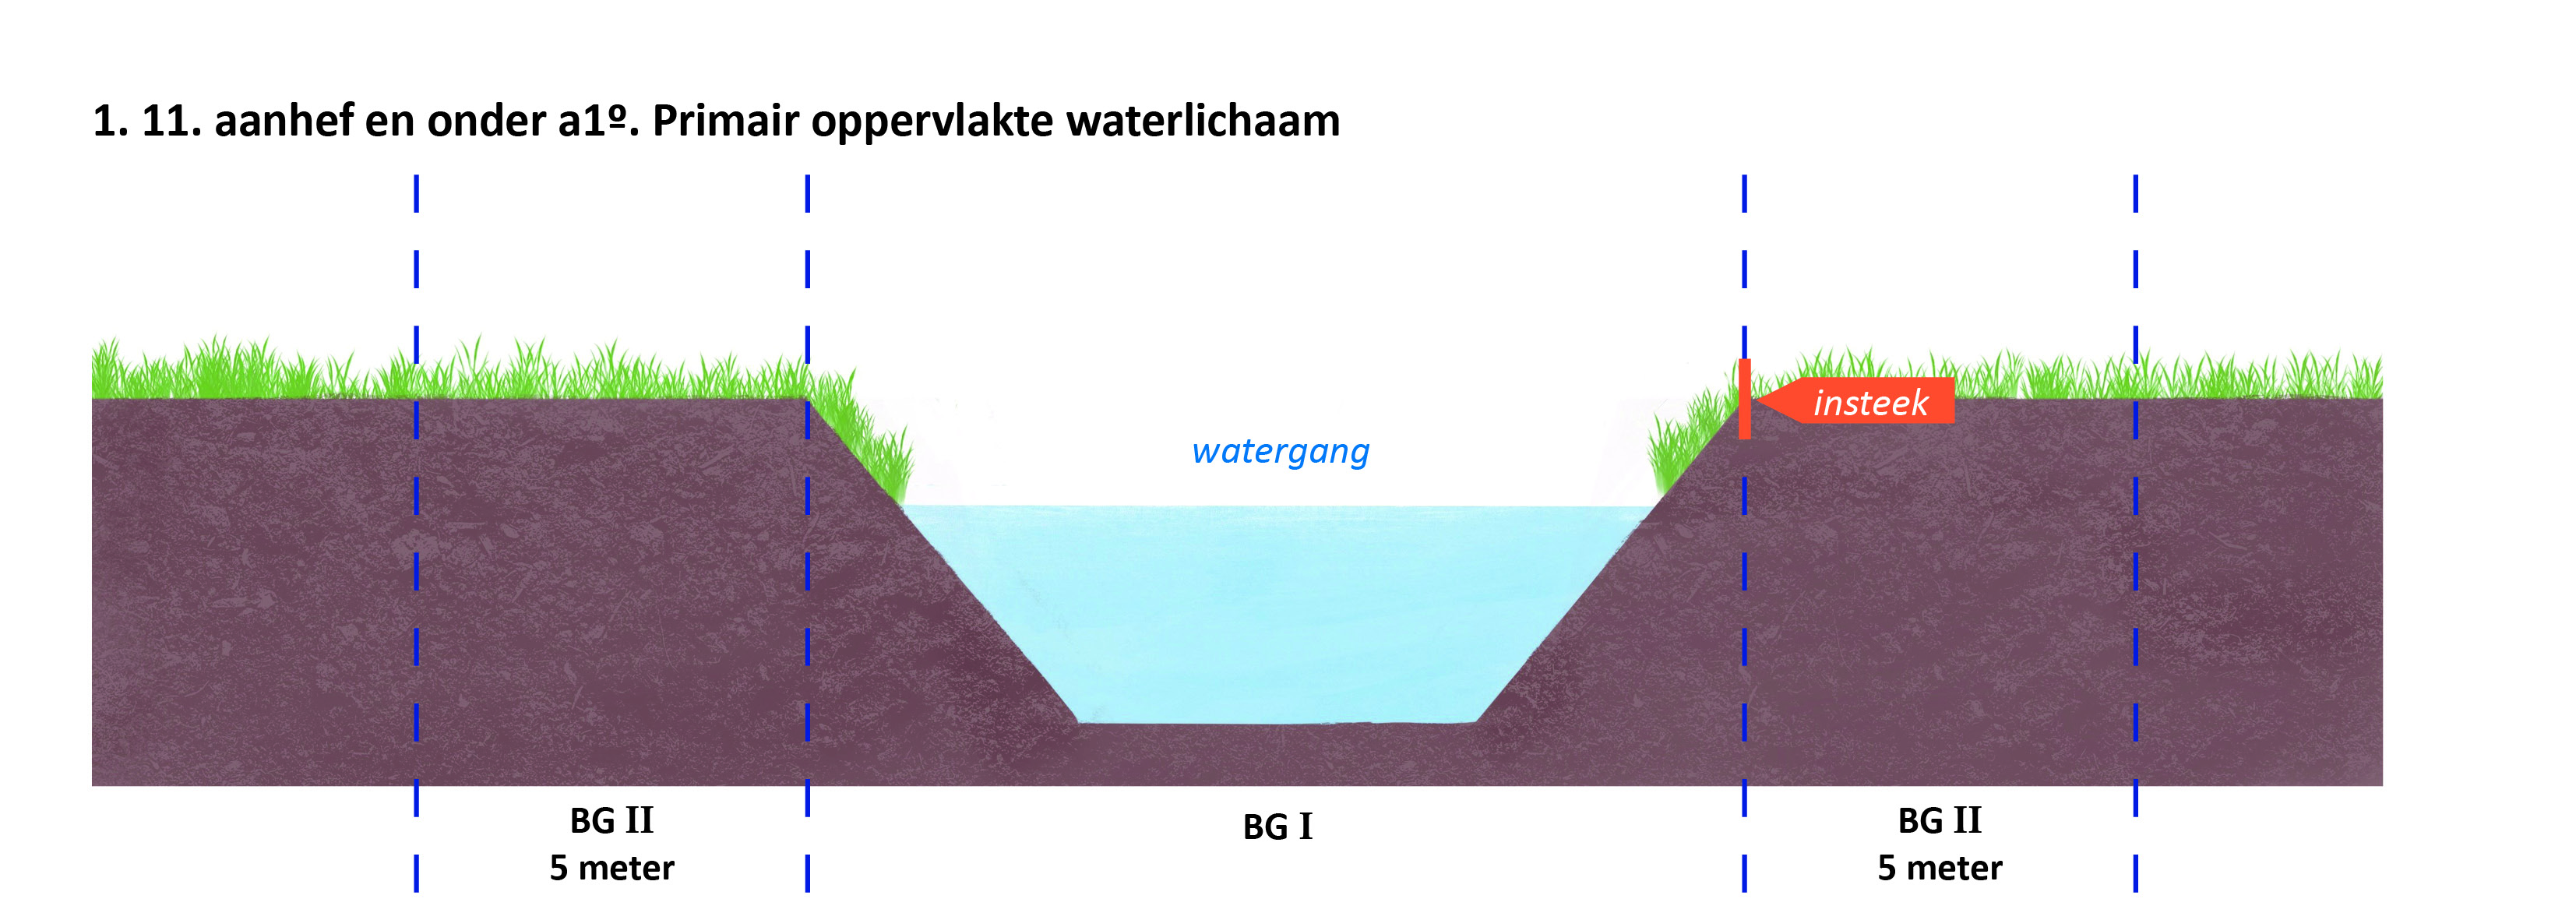 waterschapsverordening - bijlage 2 - 1-1.11.a1